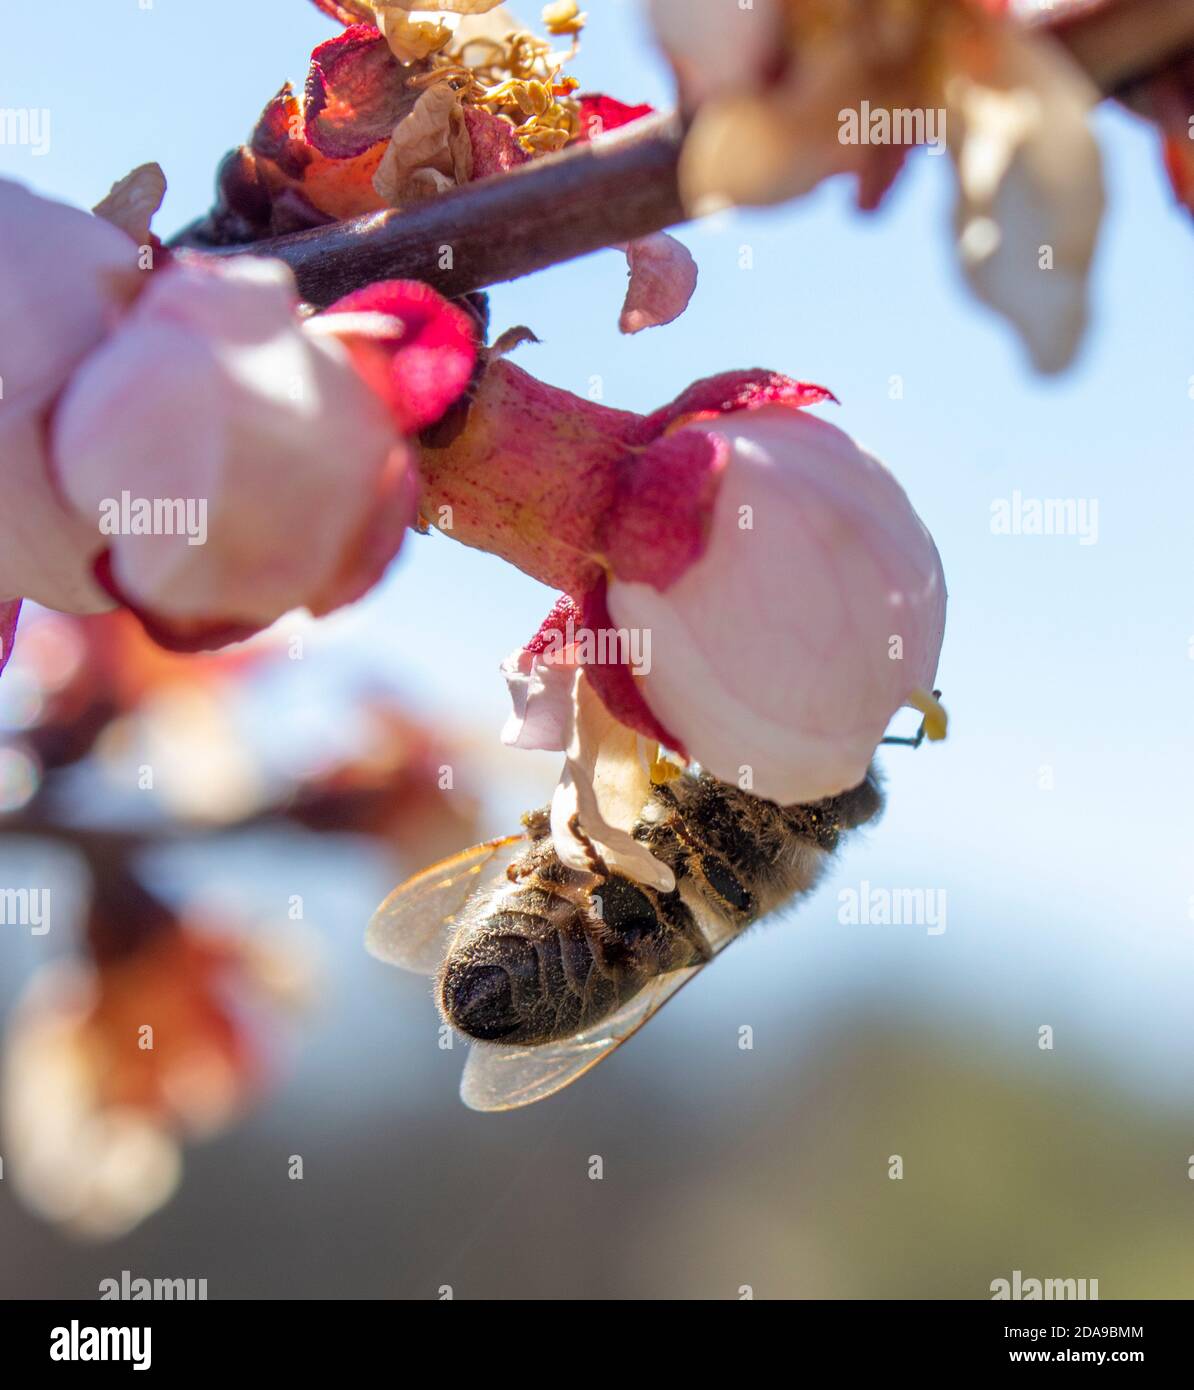 Die Biene bestäubt die Aprikosenblüte und verbreitet den Monilia-Pilz von Insekten, einschließlich Bienen. Das Problem der Infektion mit Pilzerkrankungen. Stockfoto